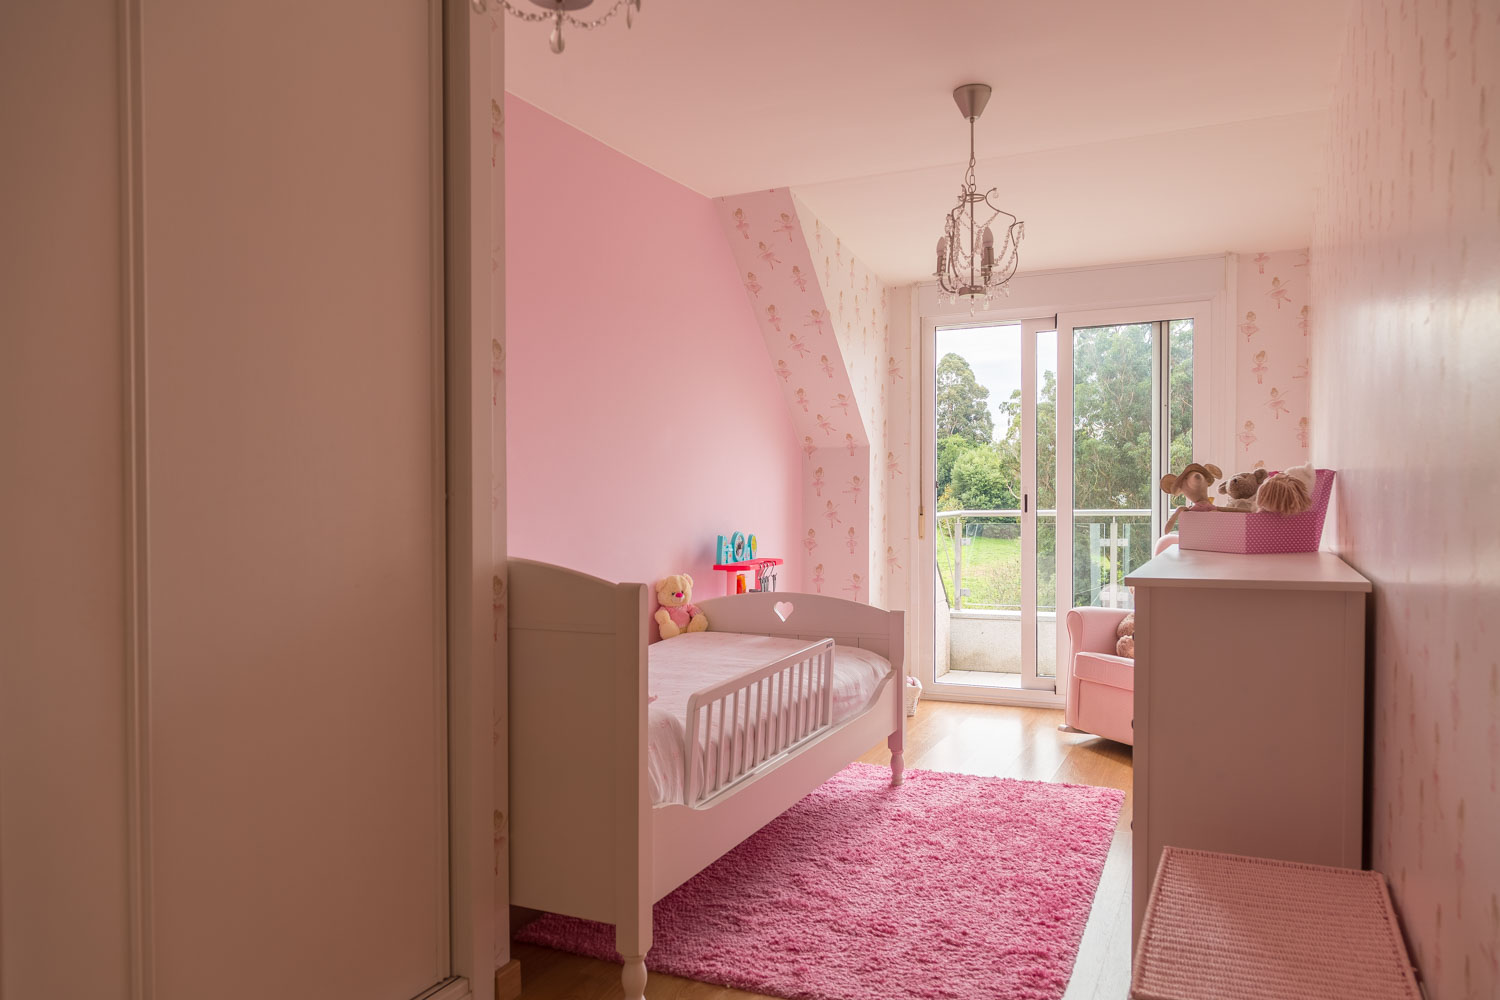 Dormitorio infantil con decoración en color rosa